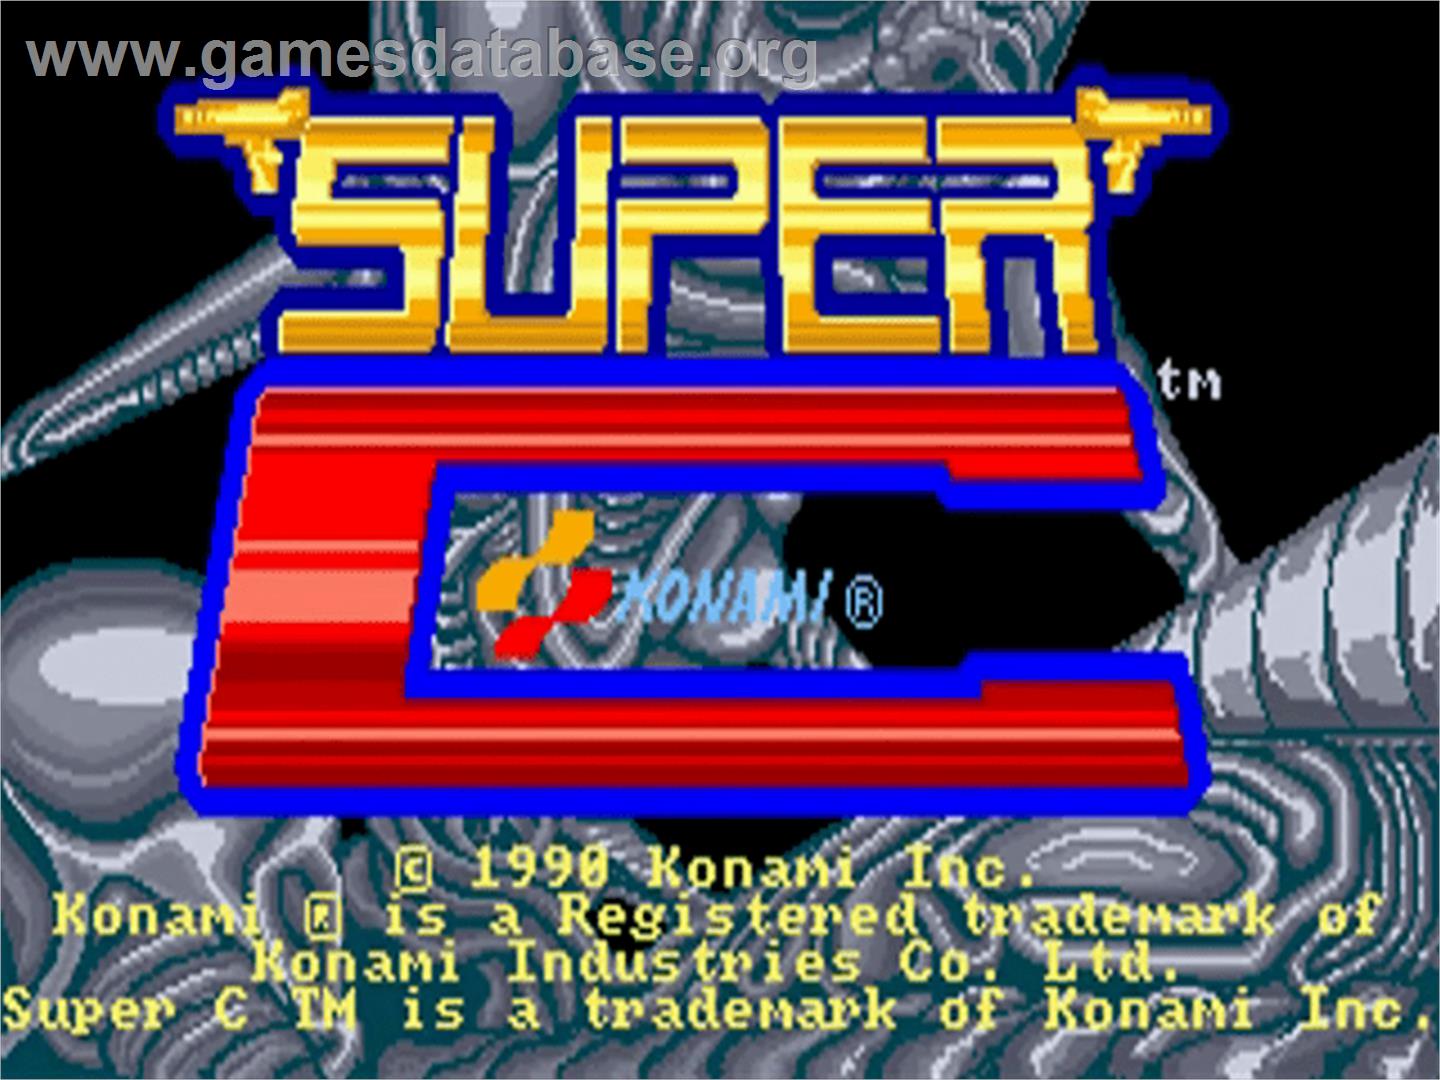 Super C - Commodore Amiga - Artwork - Title Screen